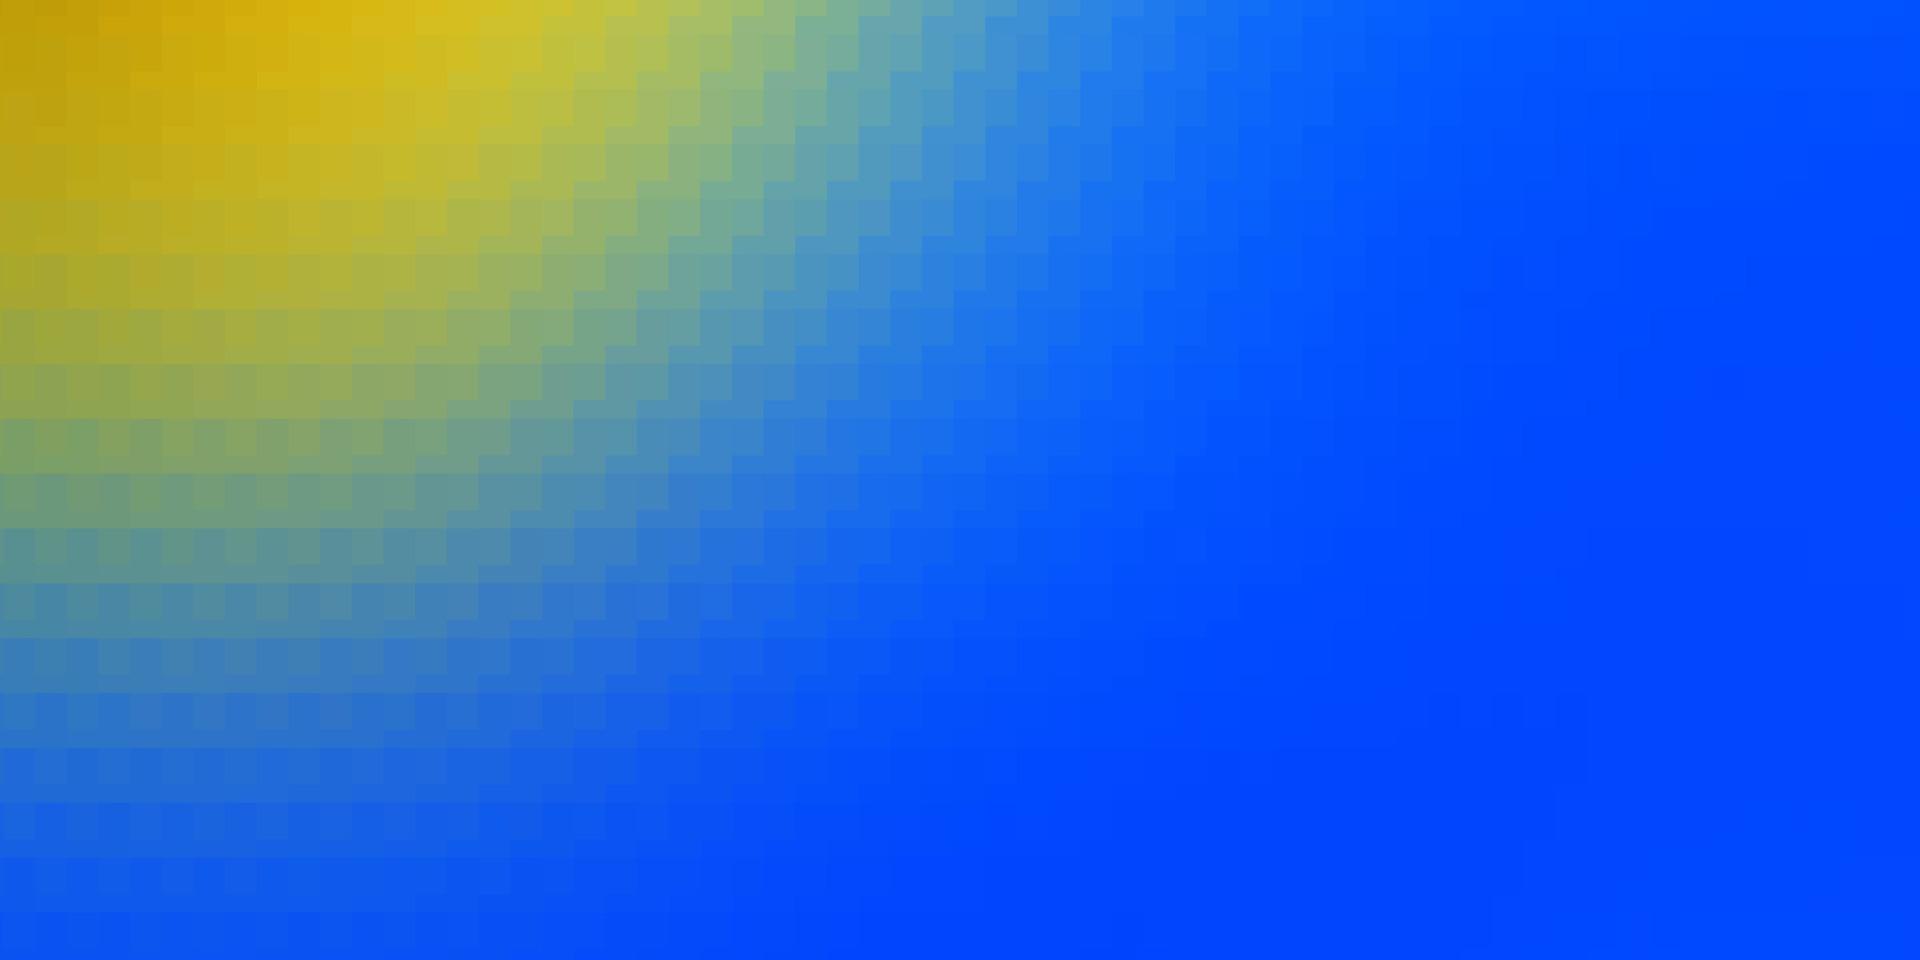 sfondo vettoriale azzurro, giallo con rettangoli.